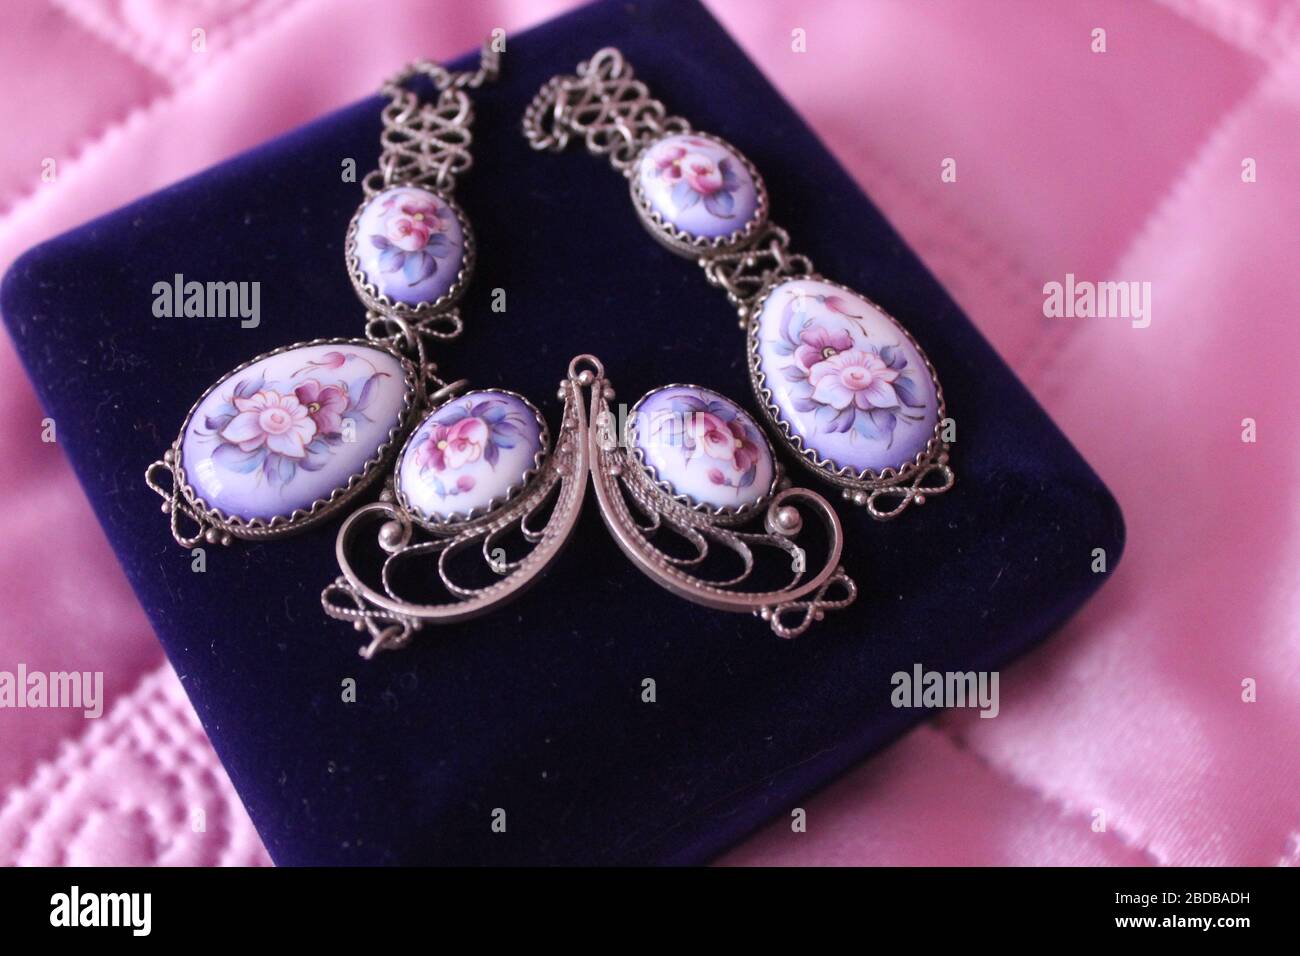 vintage necklace from blue enamel on velvet box for gift Stock Photo